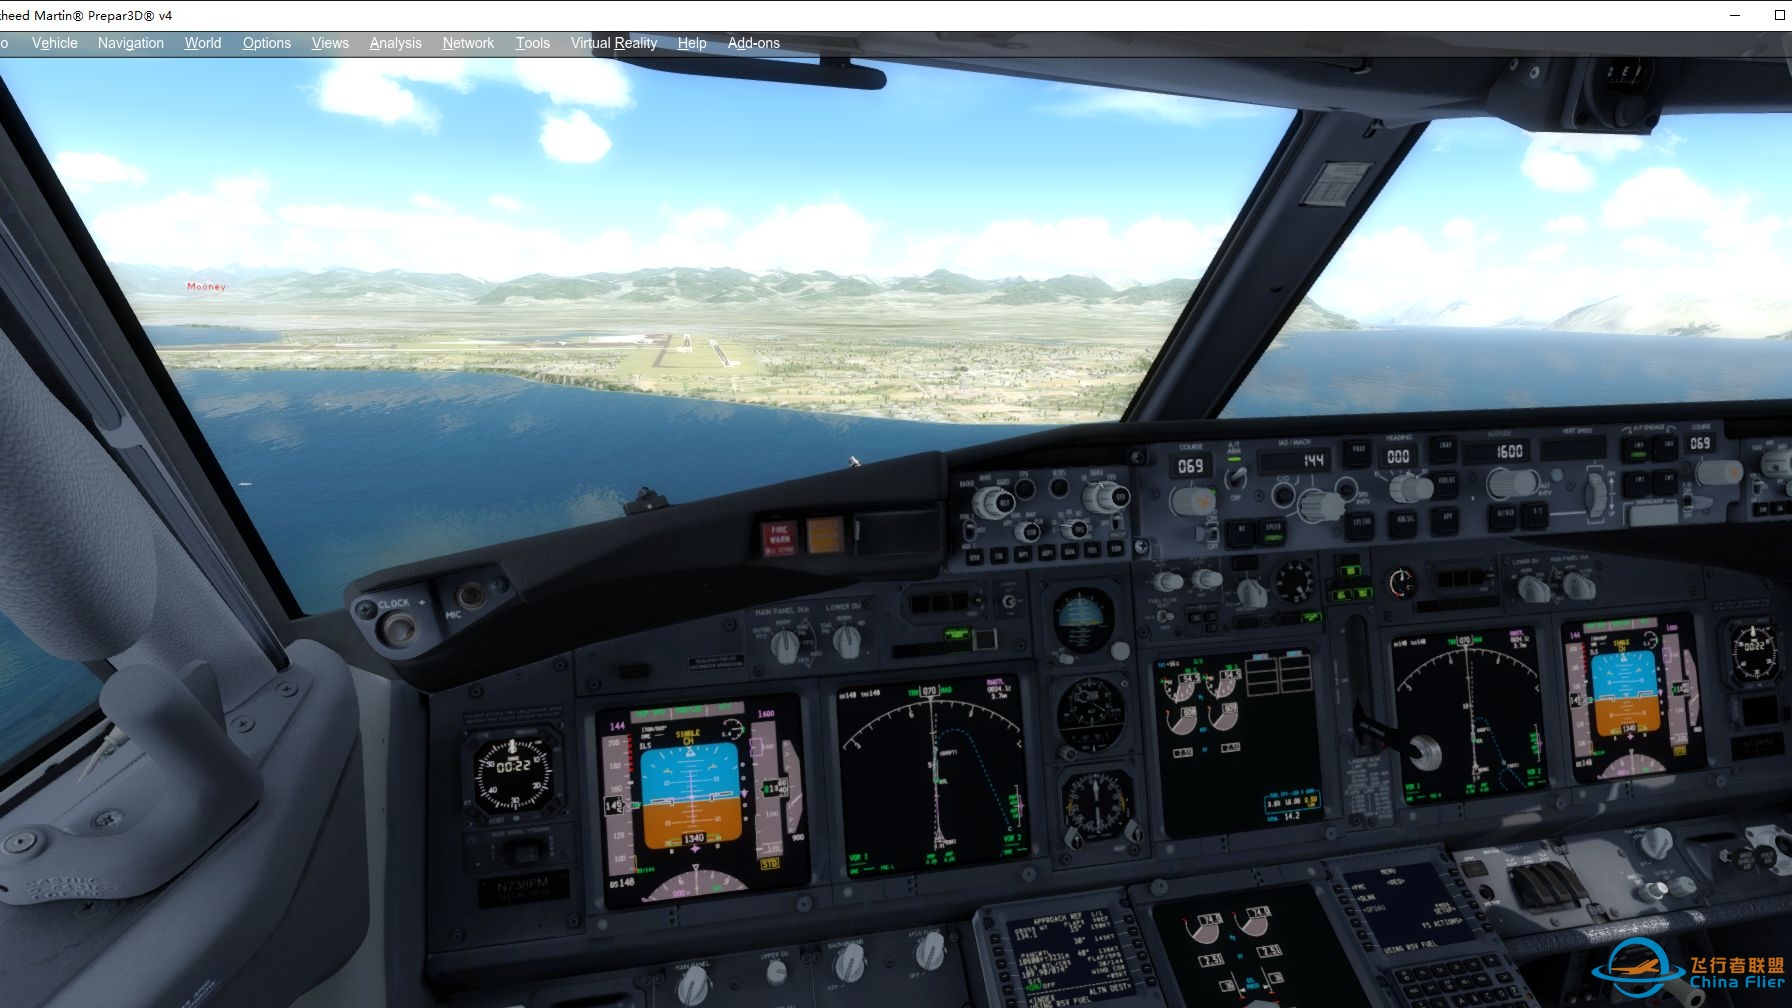 P3D模拟飞行 PMDG737 西雅图-安克雷奇2 完美落地-876 